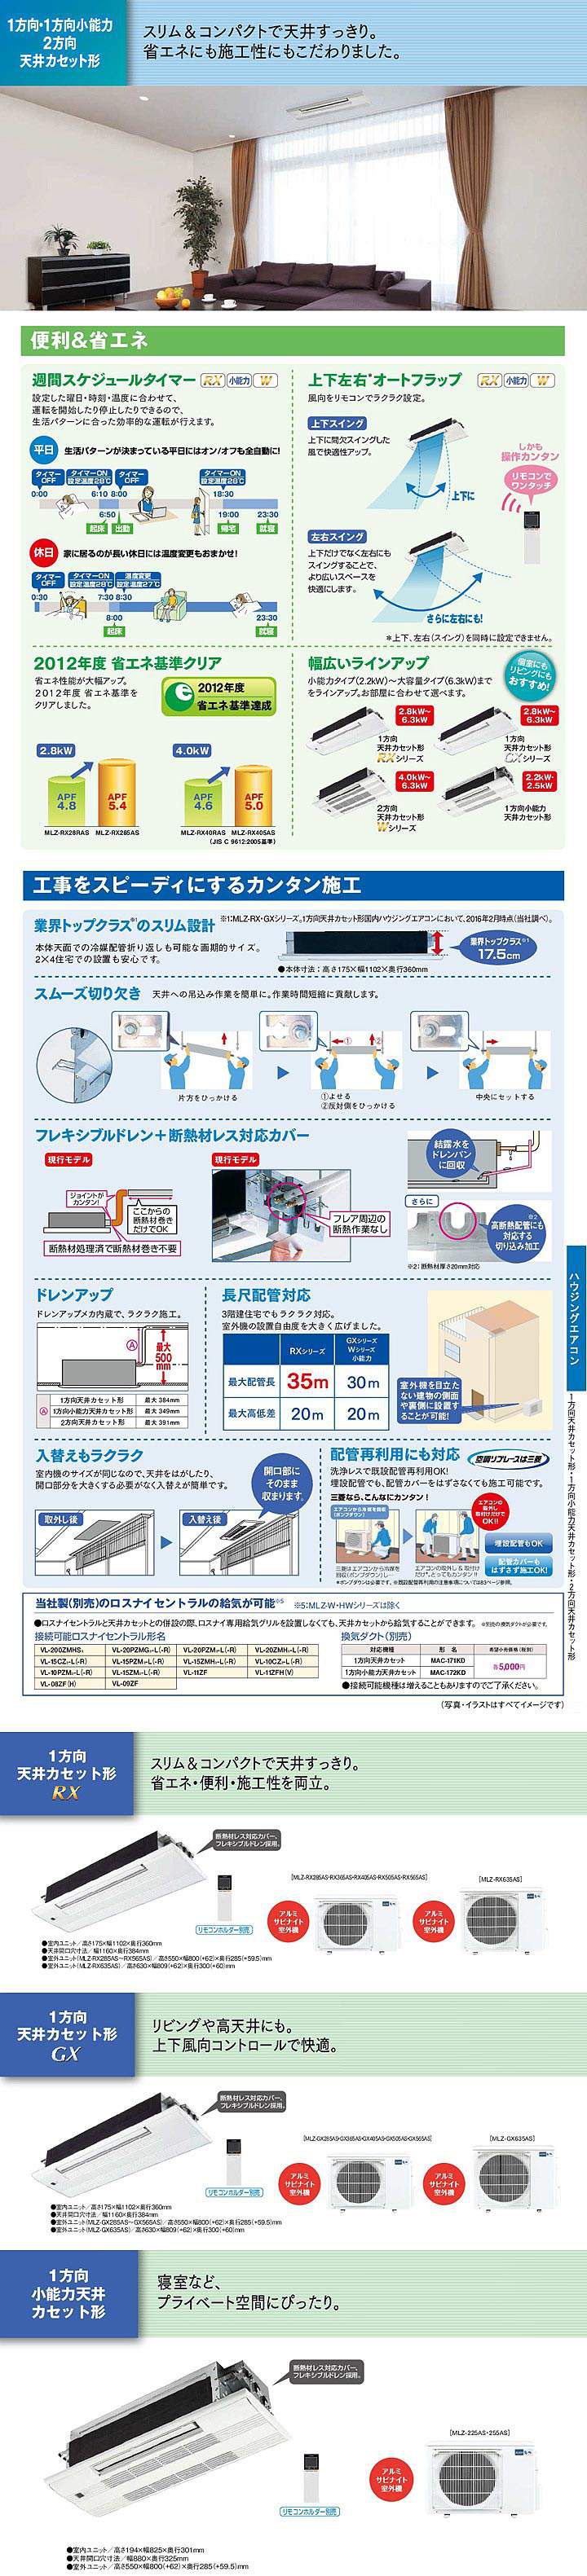 日本最大のブランド日本最大のブランド三菱 ハウジングエアコン １方向天井カセット形 MLZ-RX5622AS-IN ストーブ・ヒーター 